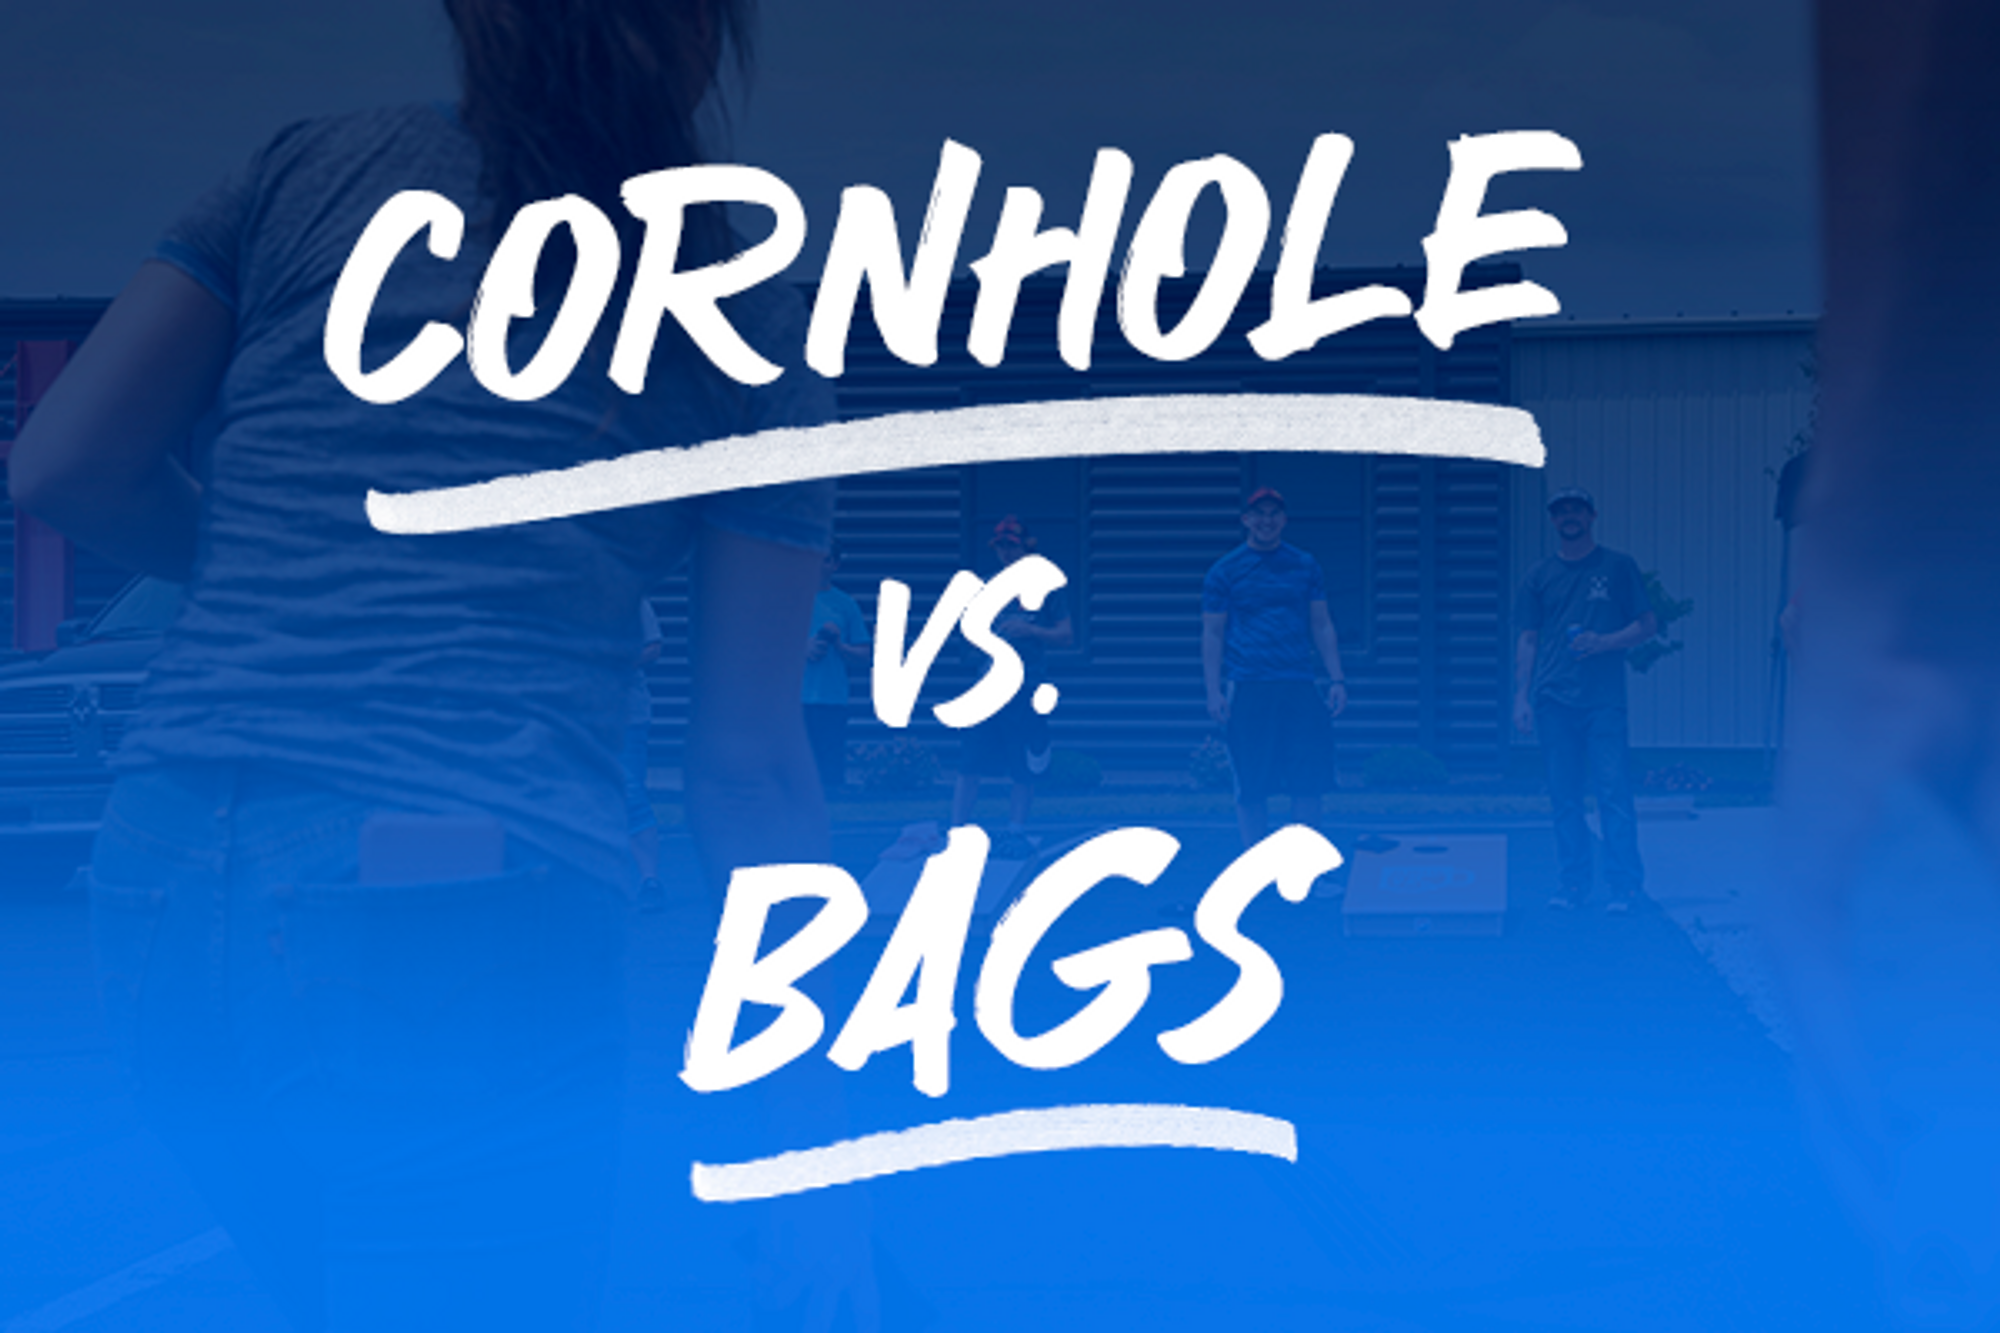 Cornhole vs. Bags